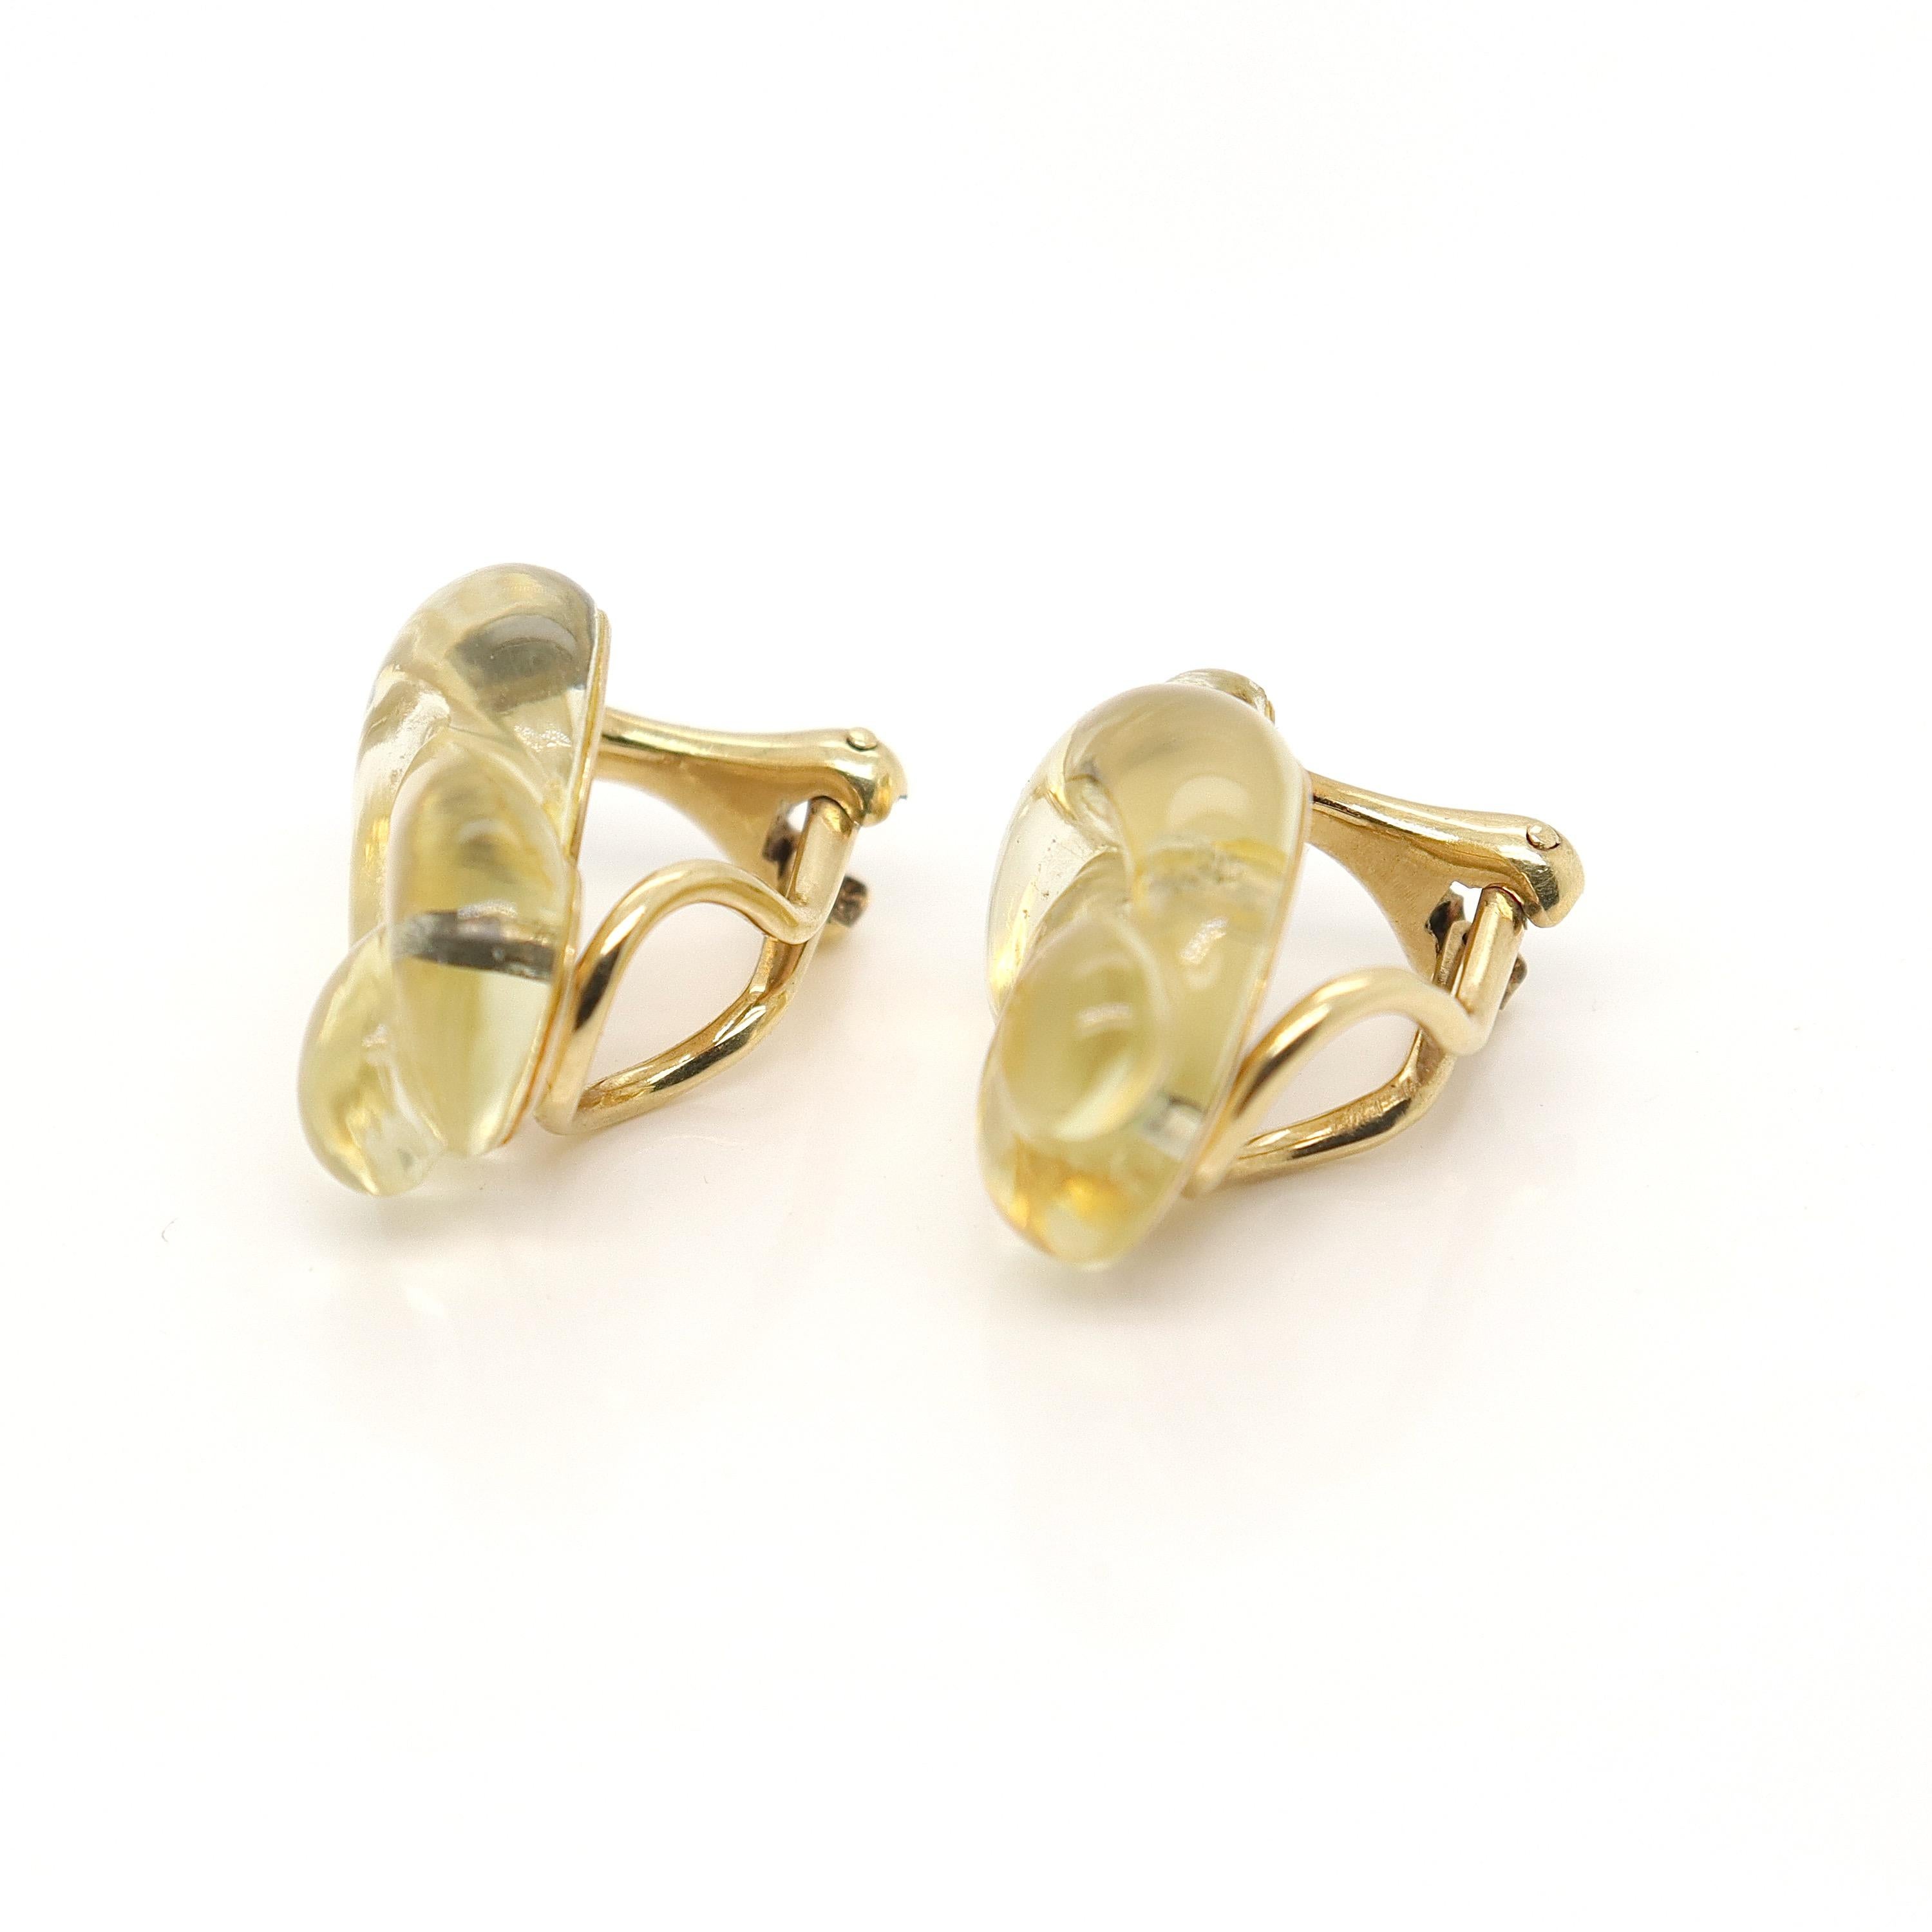 Pair Tiffany & Co 18K Gold & Glass Modern Pretzel Earrings by Angela Cummings For Sale 3